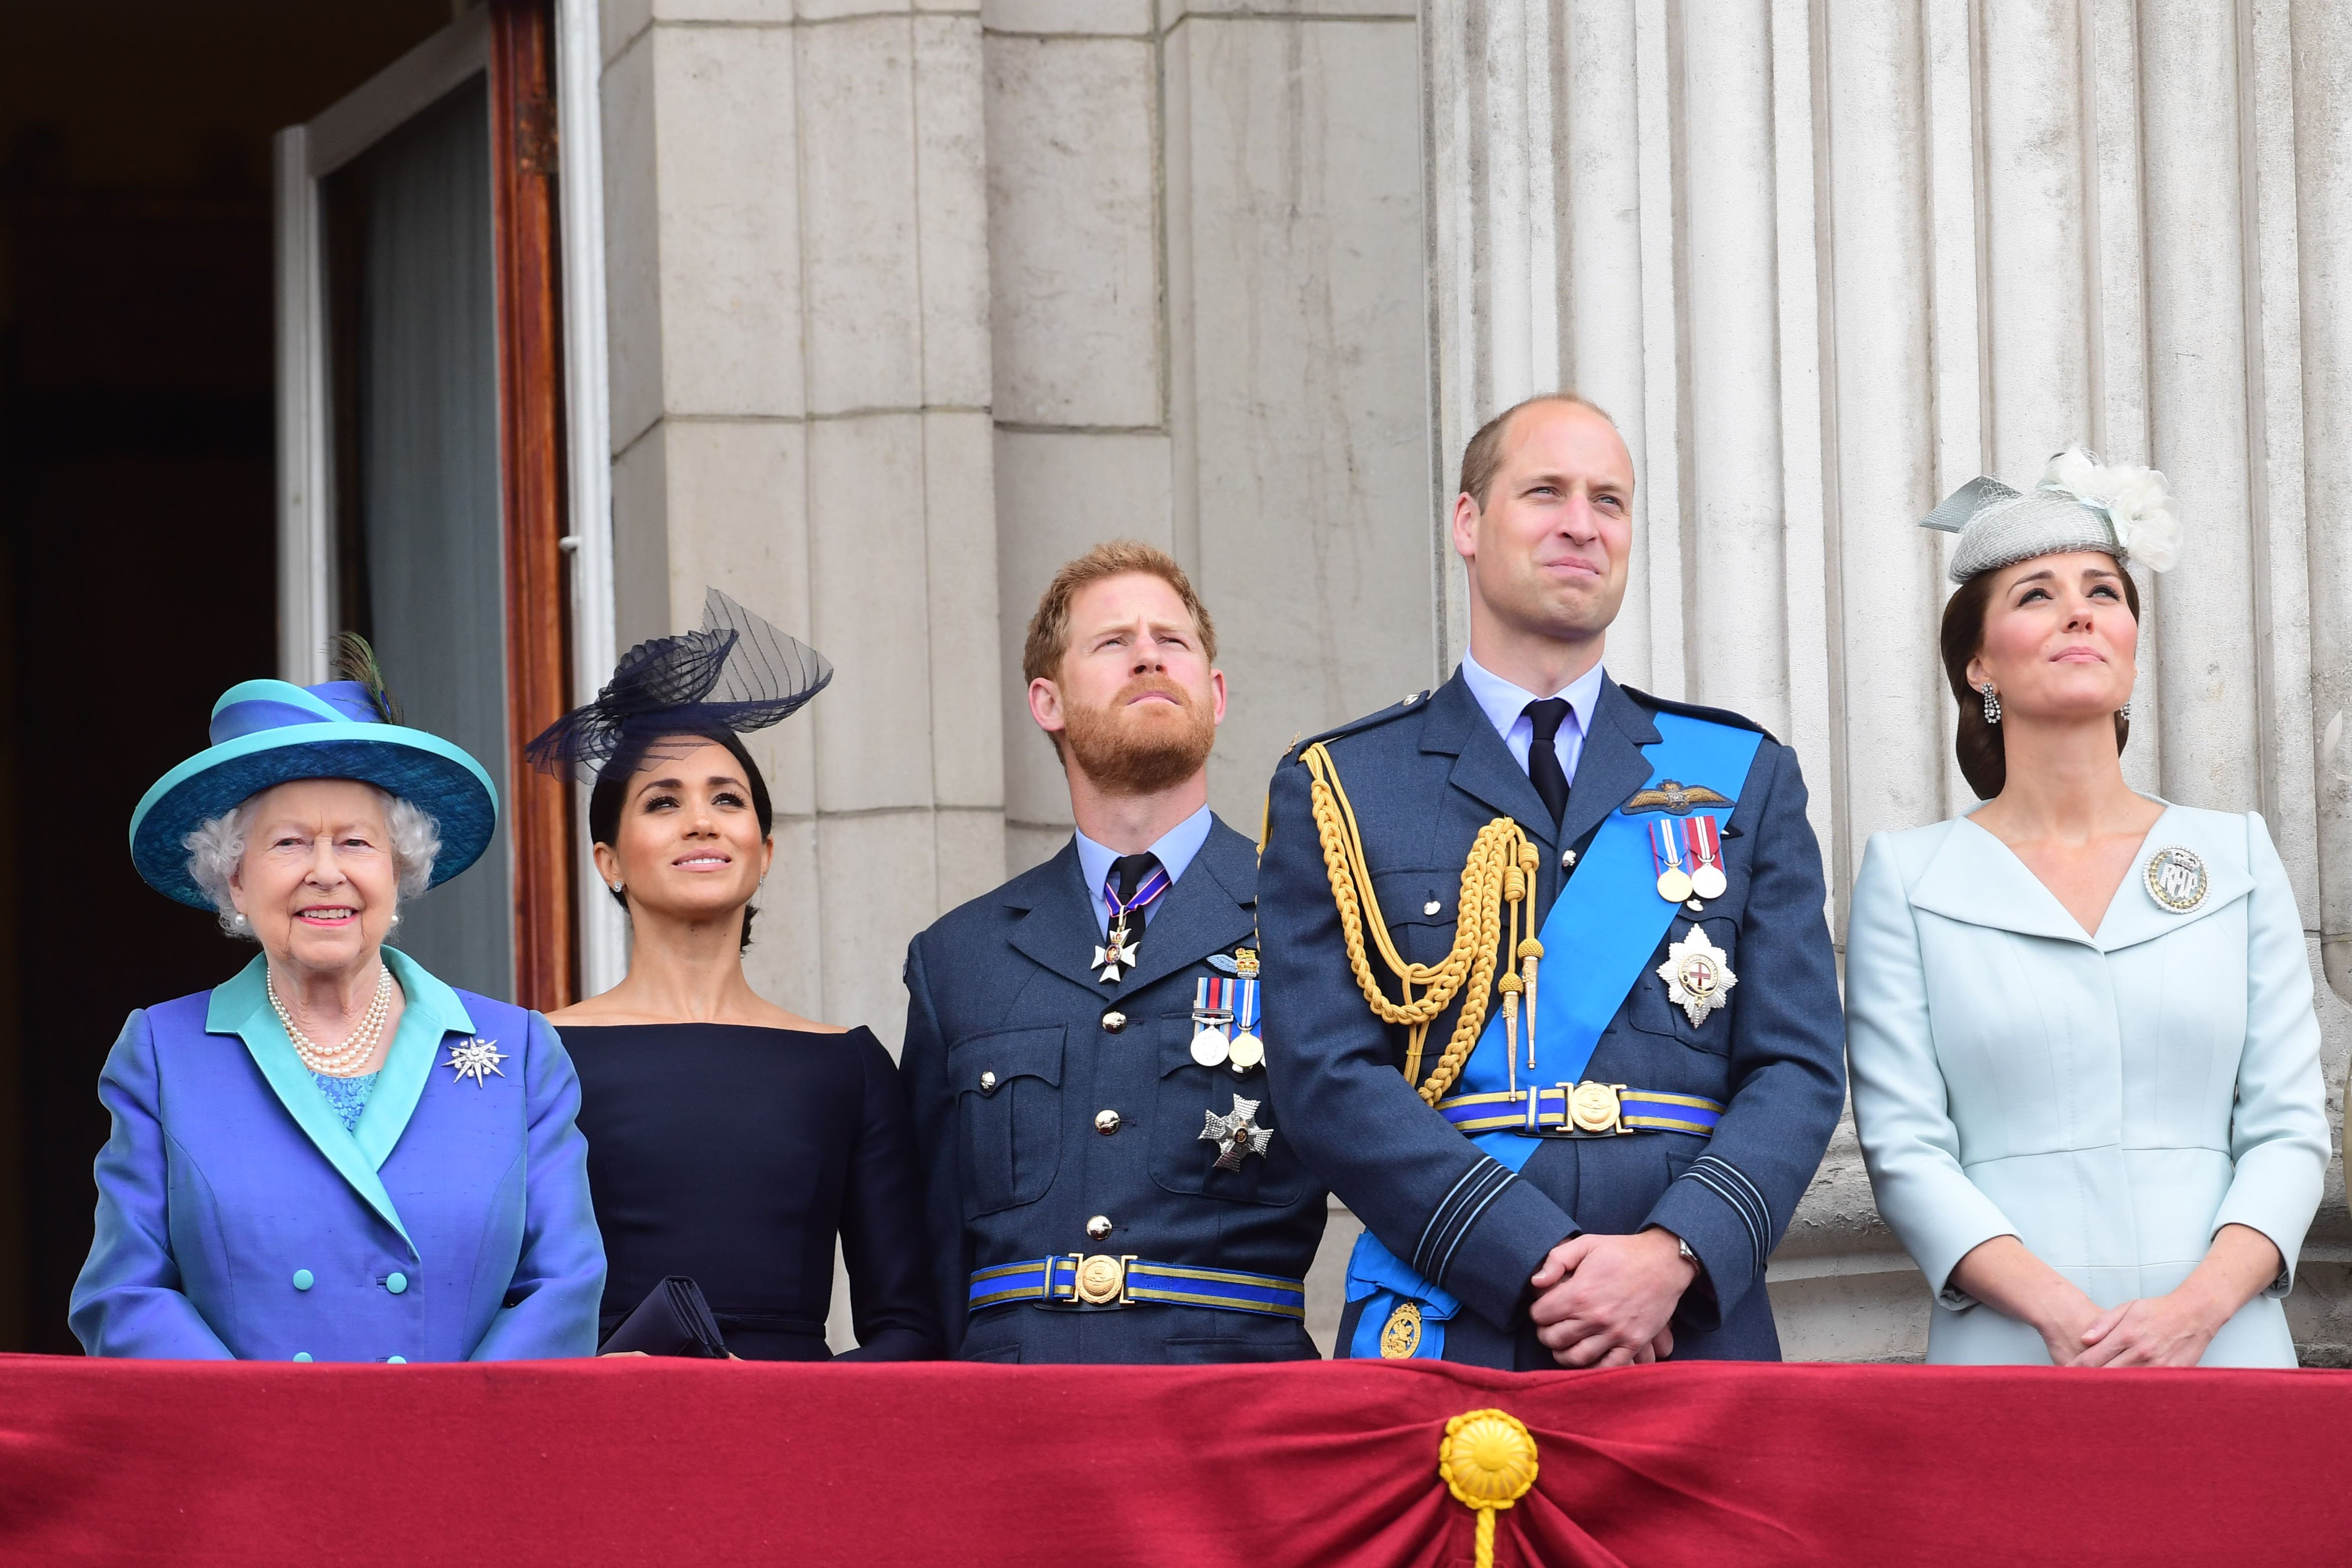 La reina Elizabeth II, Meghan Markle, el príncipe Harry, el príncipe William y Kate Middleton fotografiados desde el balcón del palacio de Buckingham, el 10 de julio de 2018 en Londres, Inglaterra. | Foto: Getty Images